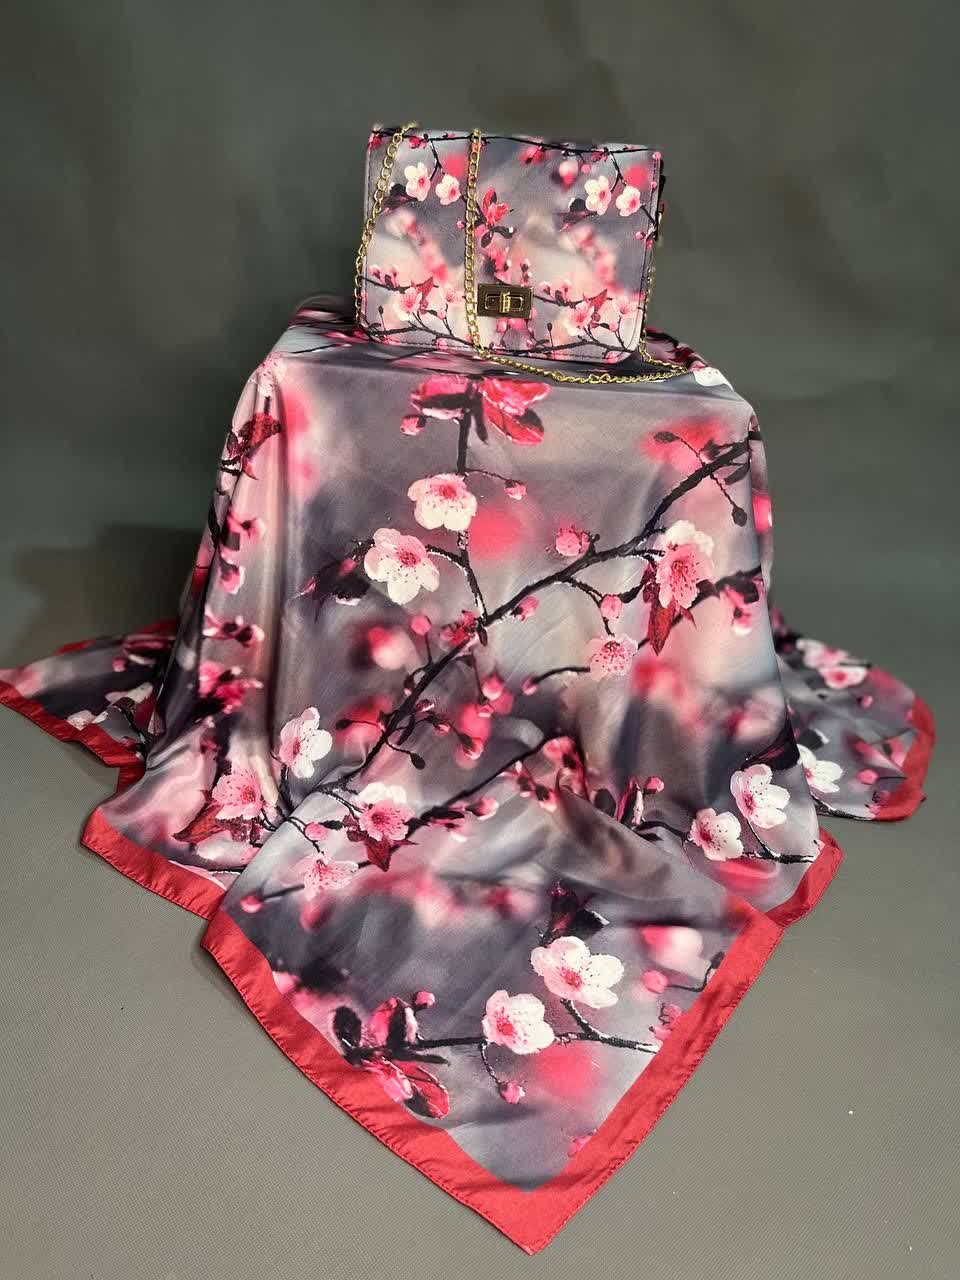 ست کیف و روسری زنانه پاسپورتی گل و شکوفه خوشرنگ کد n1360